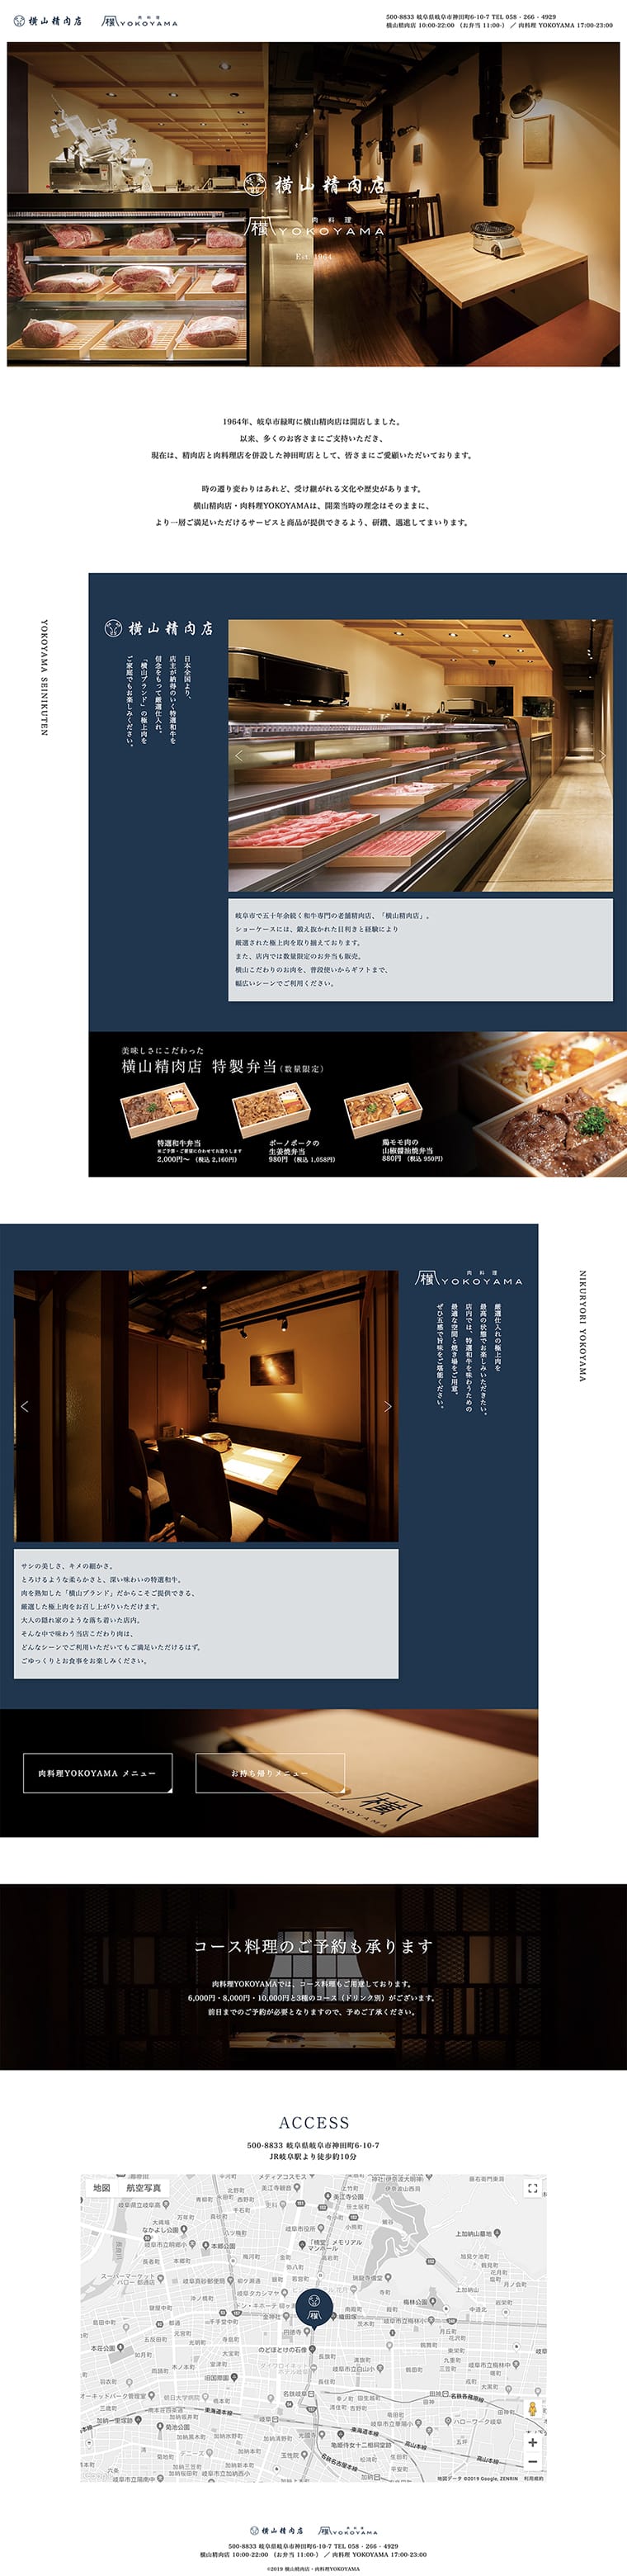 横山精肉店 ブランディング・Webデザイン・パンフレットデザイン・サインデザイン